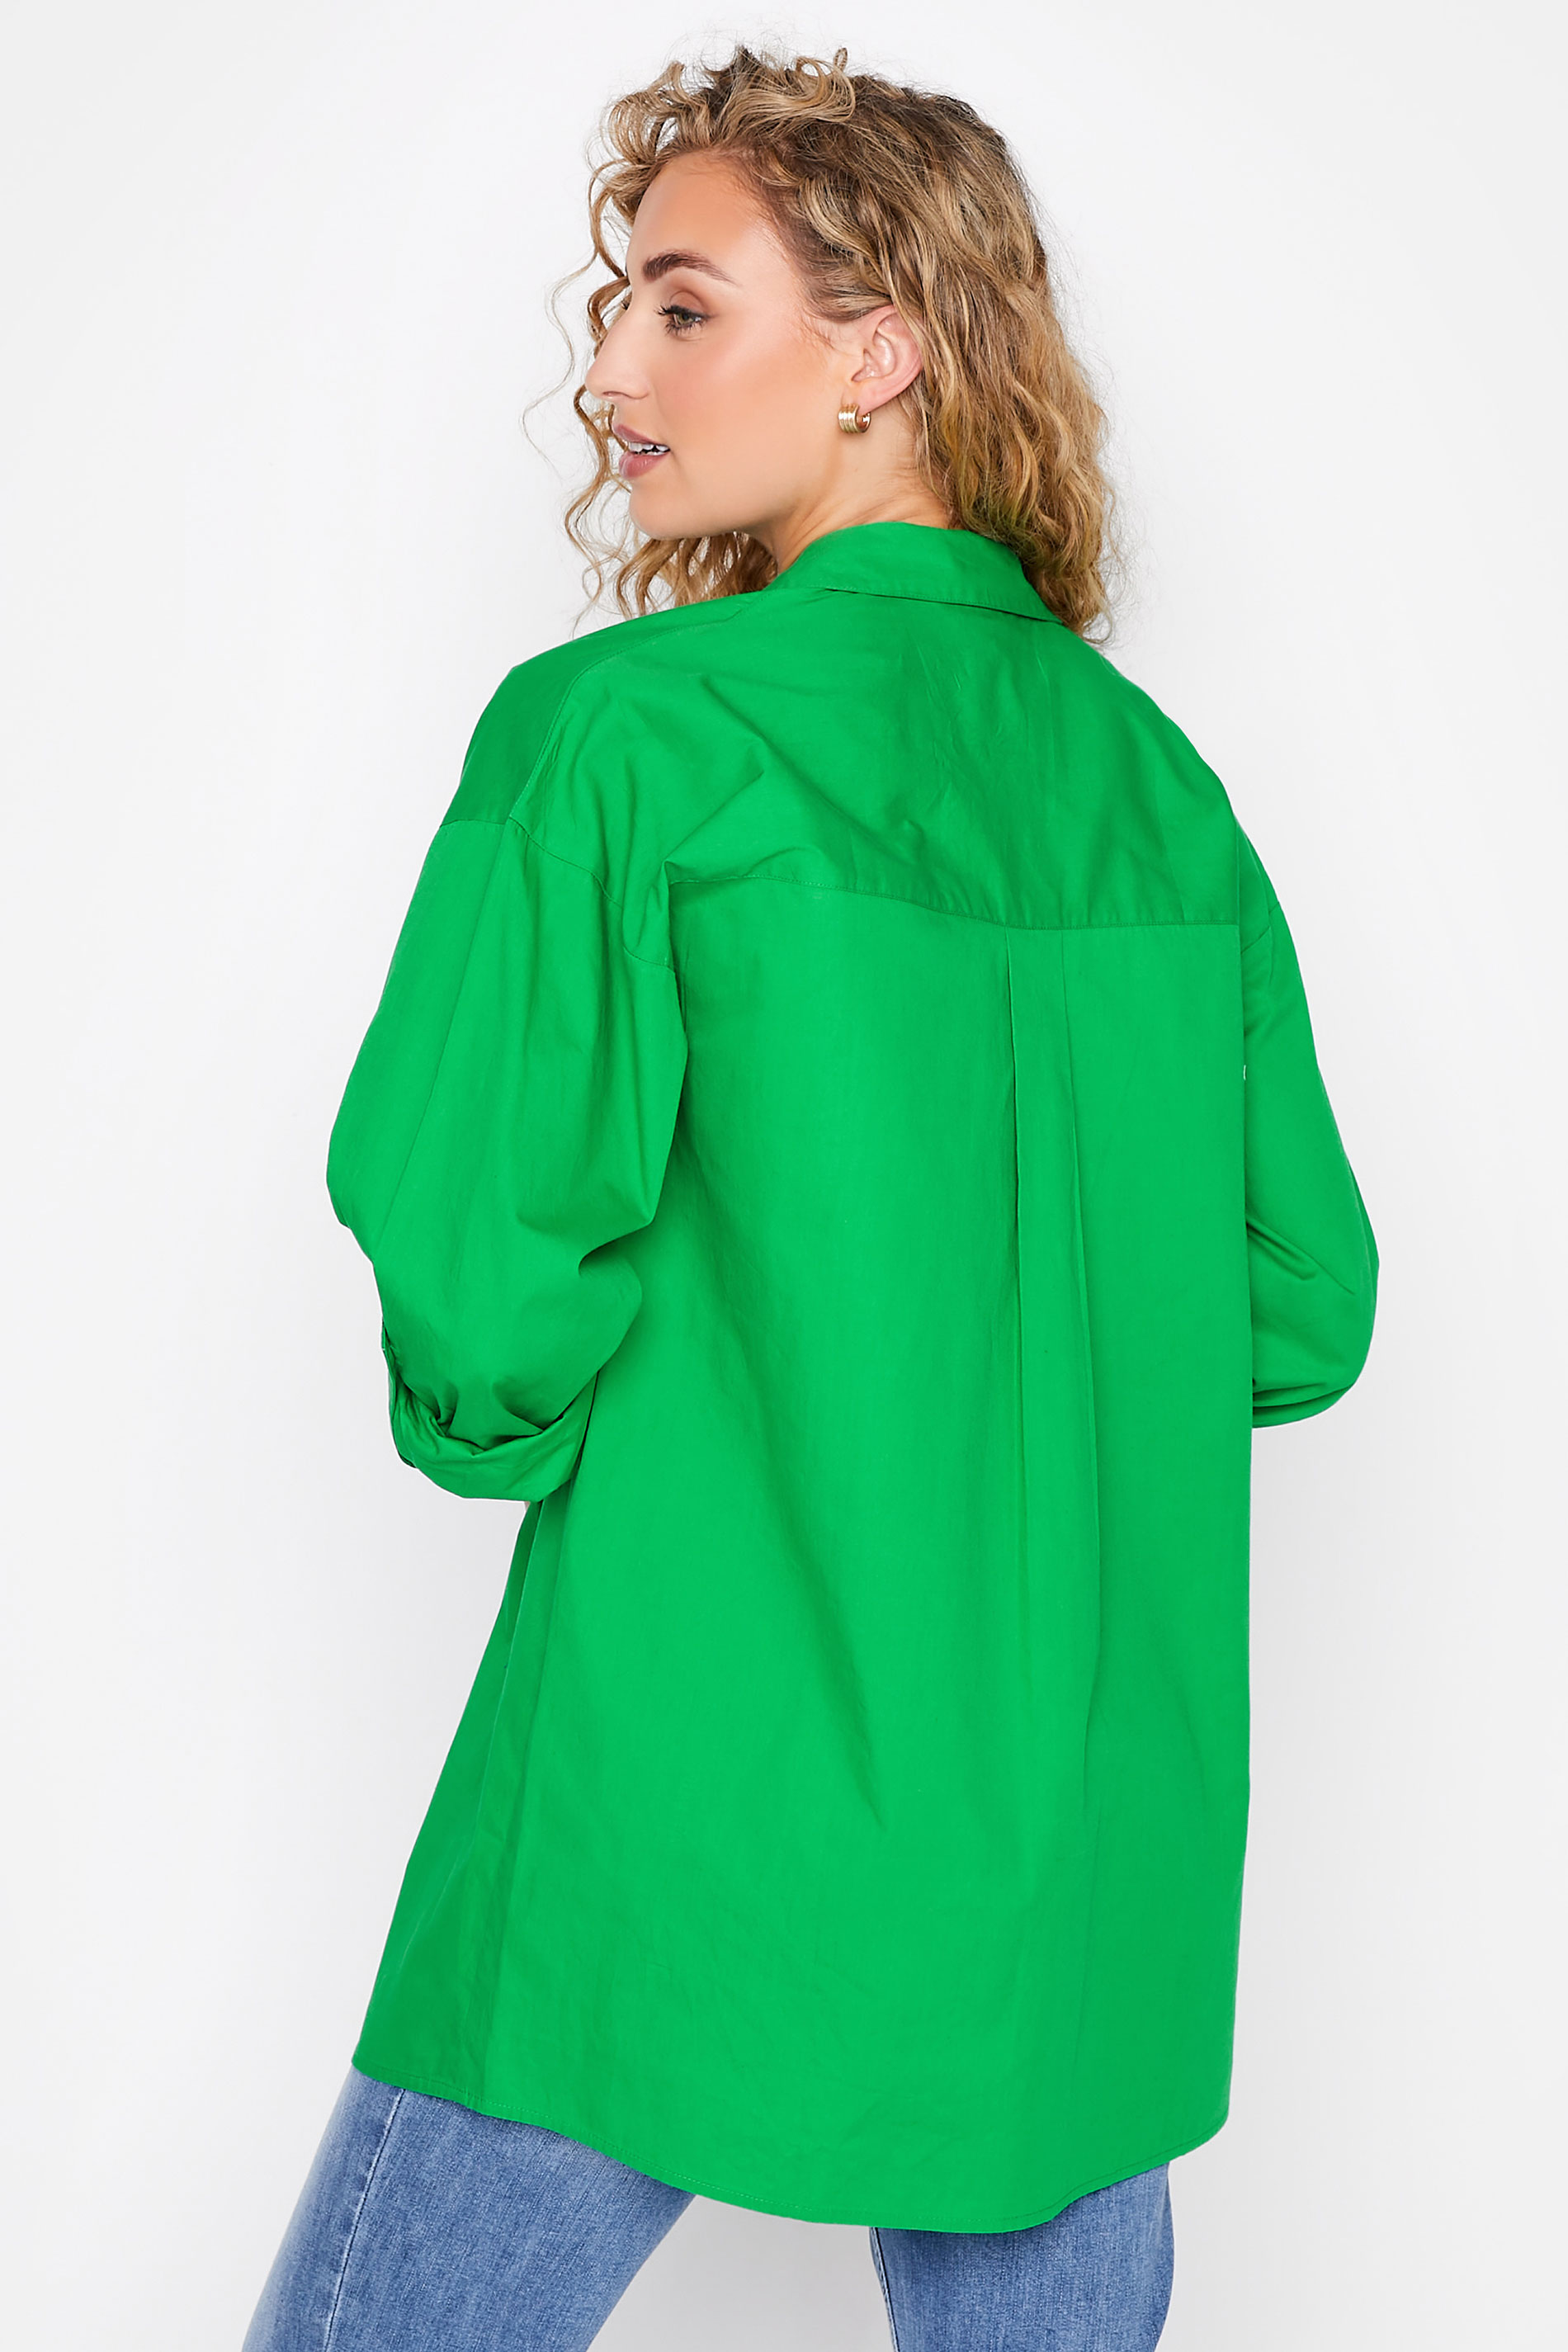 LTS Tall Women's Apple Green Oversized Cotton Shirt | Long Tall Sally